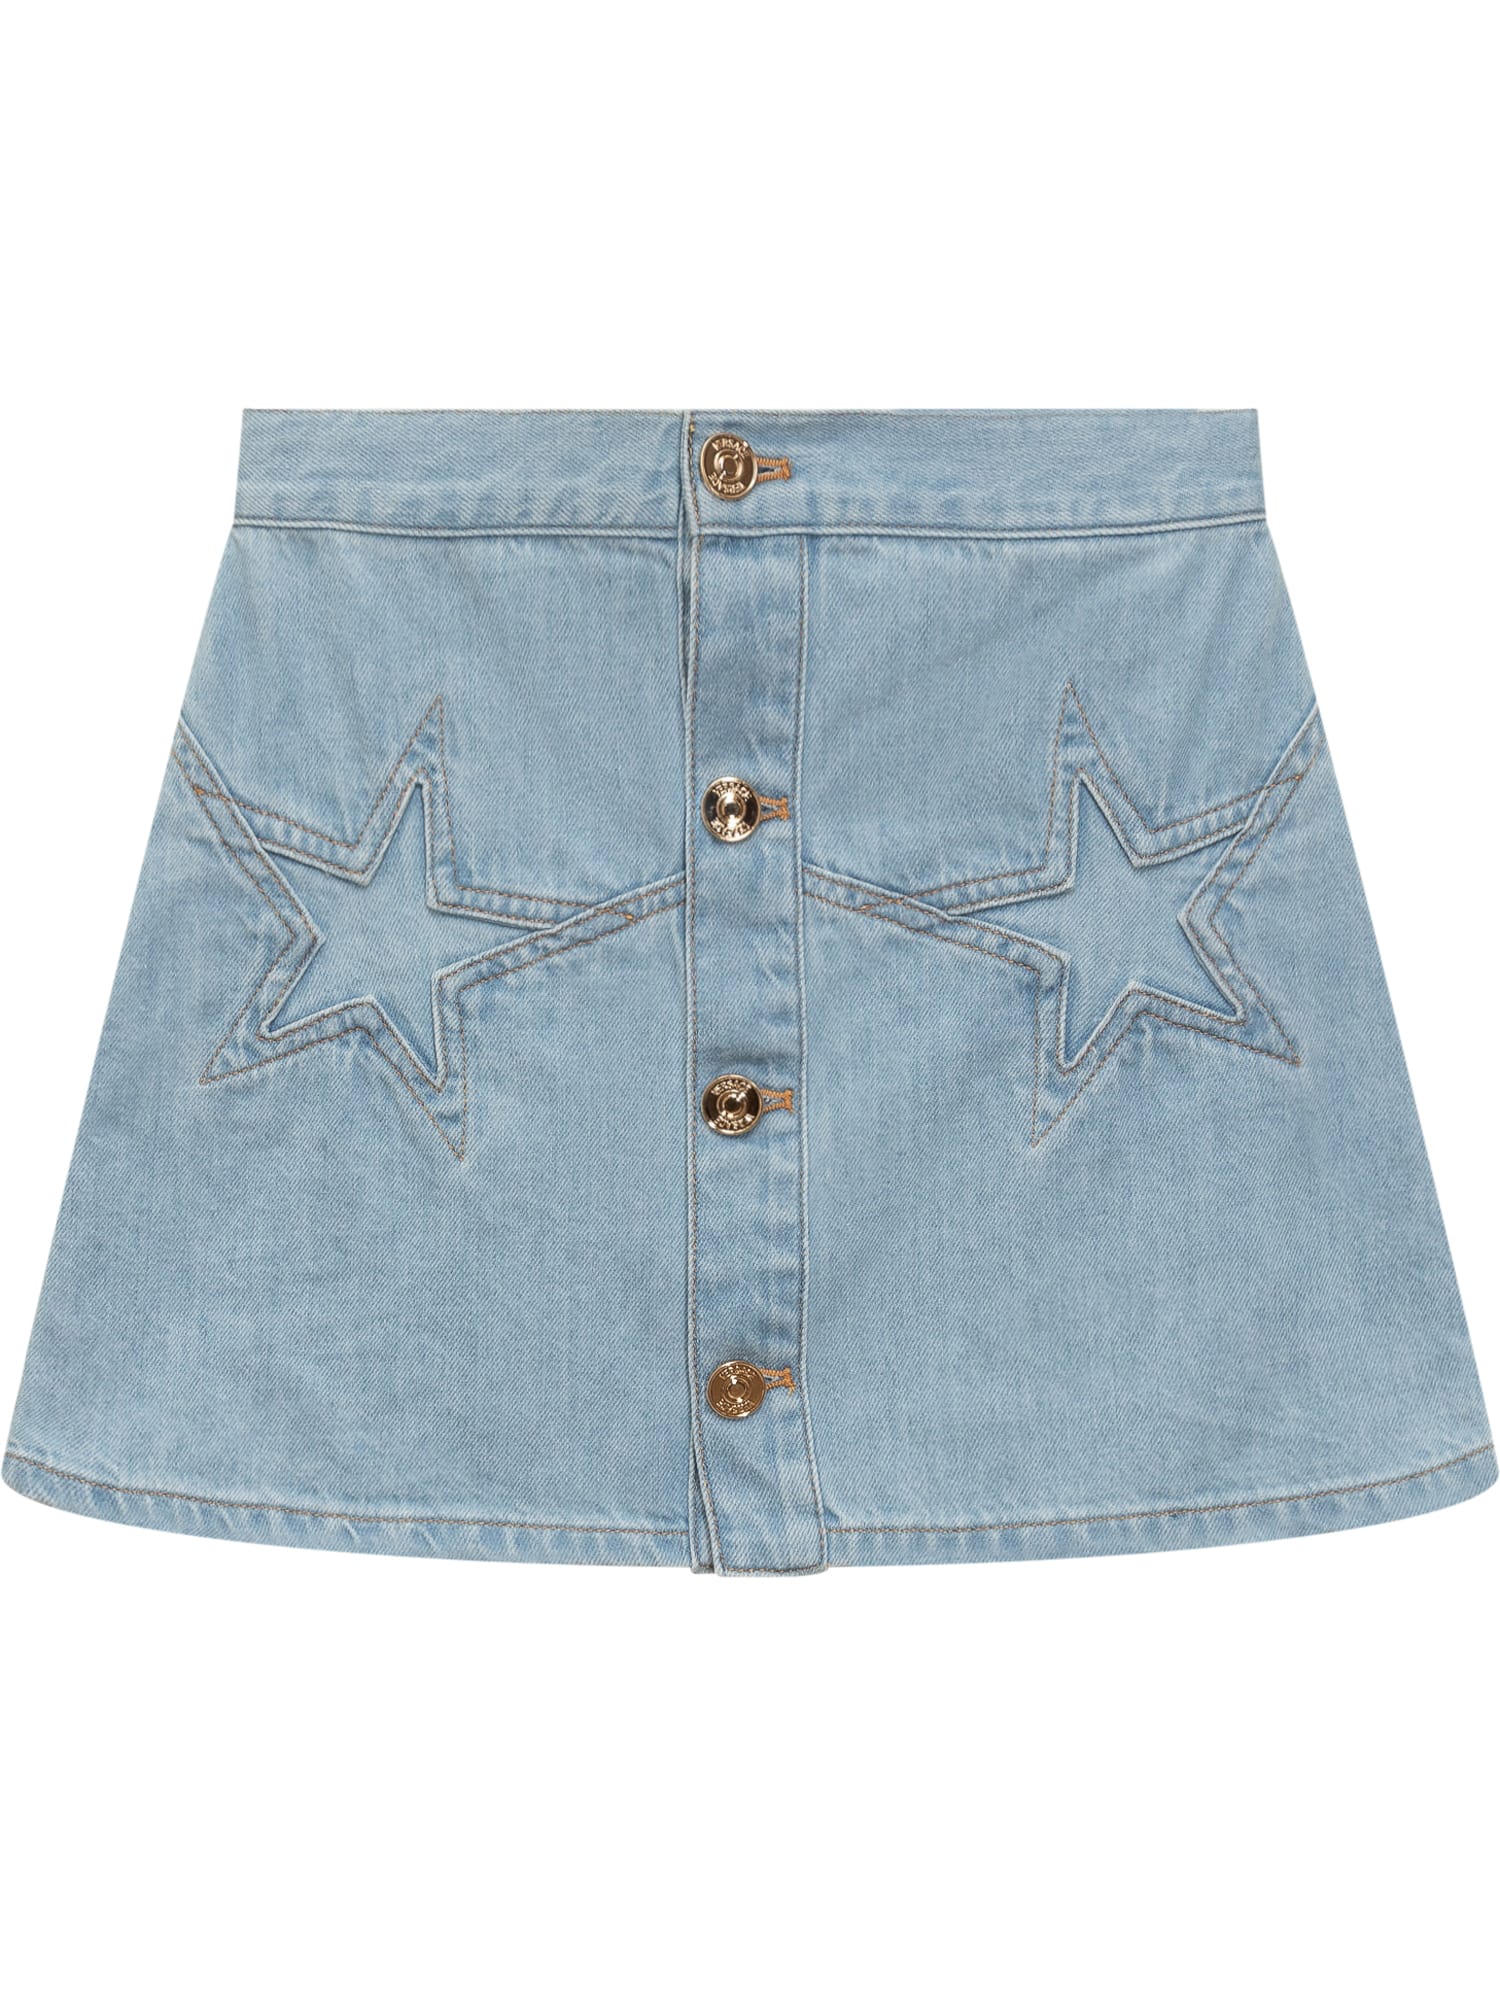 Versace Kids' Skirt Denim In Blu Chiaro